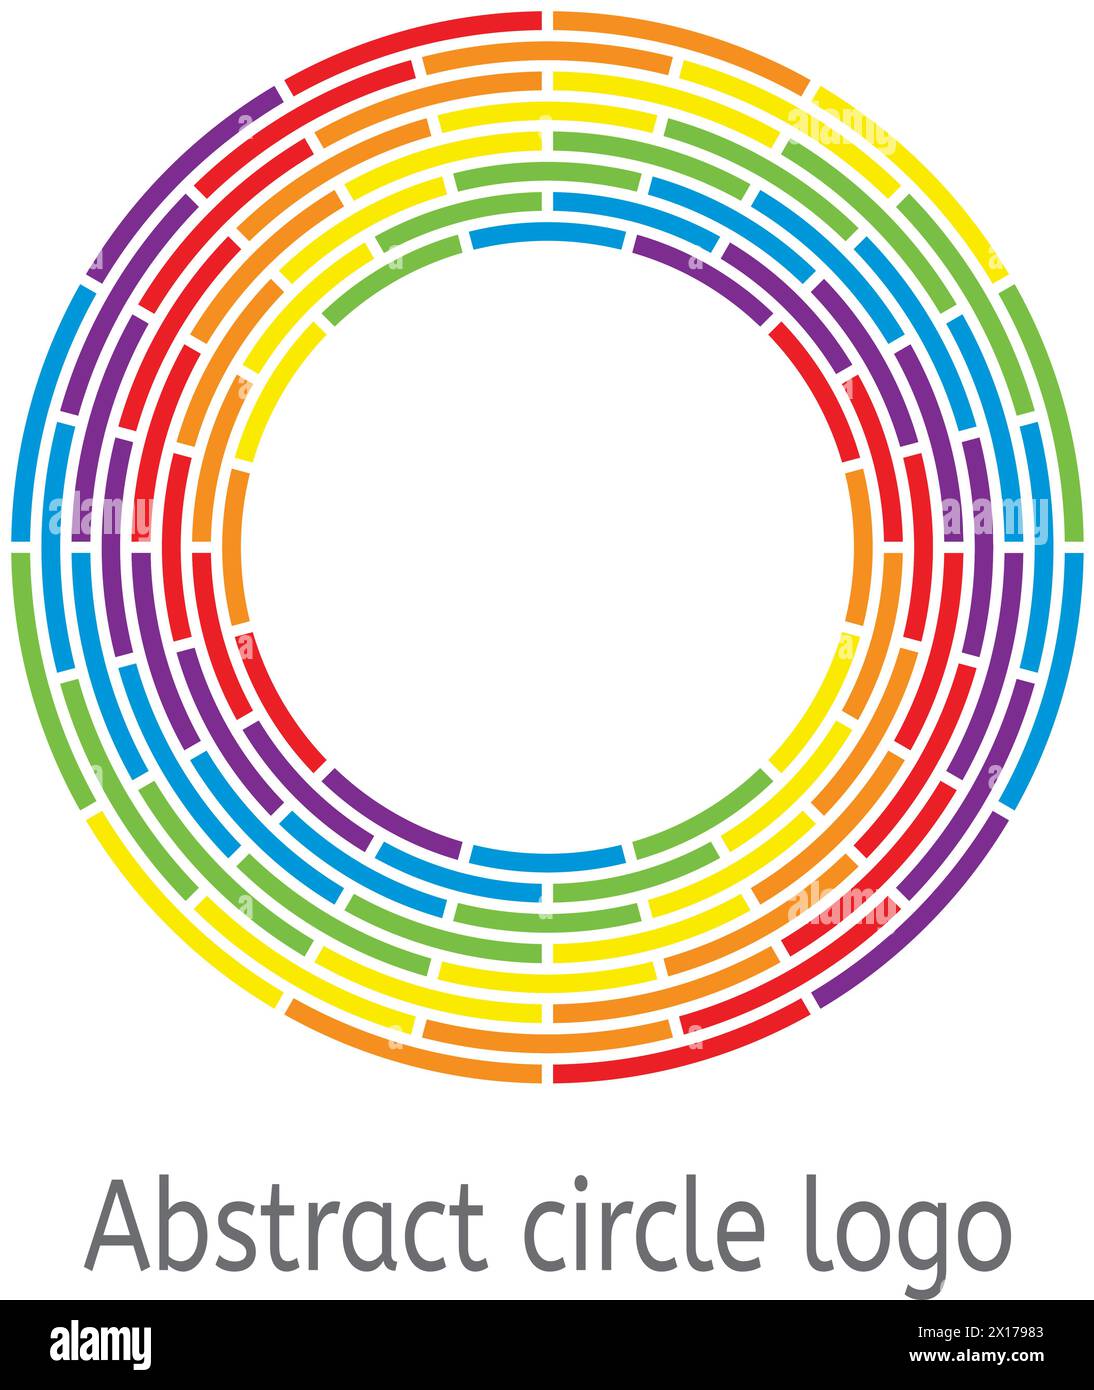 Vektorhintergrund des runden Kreises mit Regenbogenfarben. Abstraktes Logo in farbigem Kreis für Grafikdesign und Business-Illustration Stock Vektor